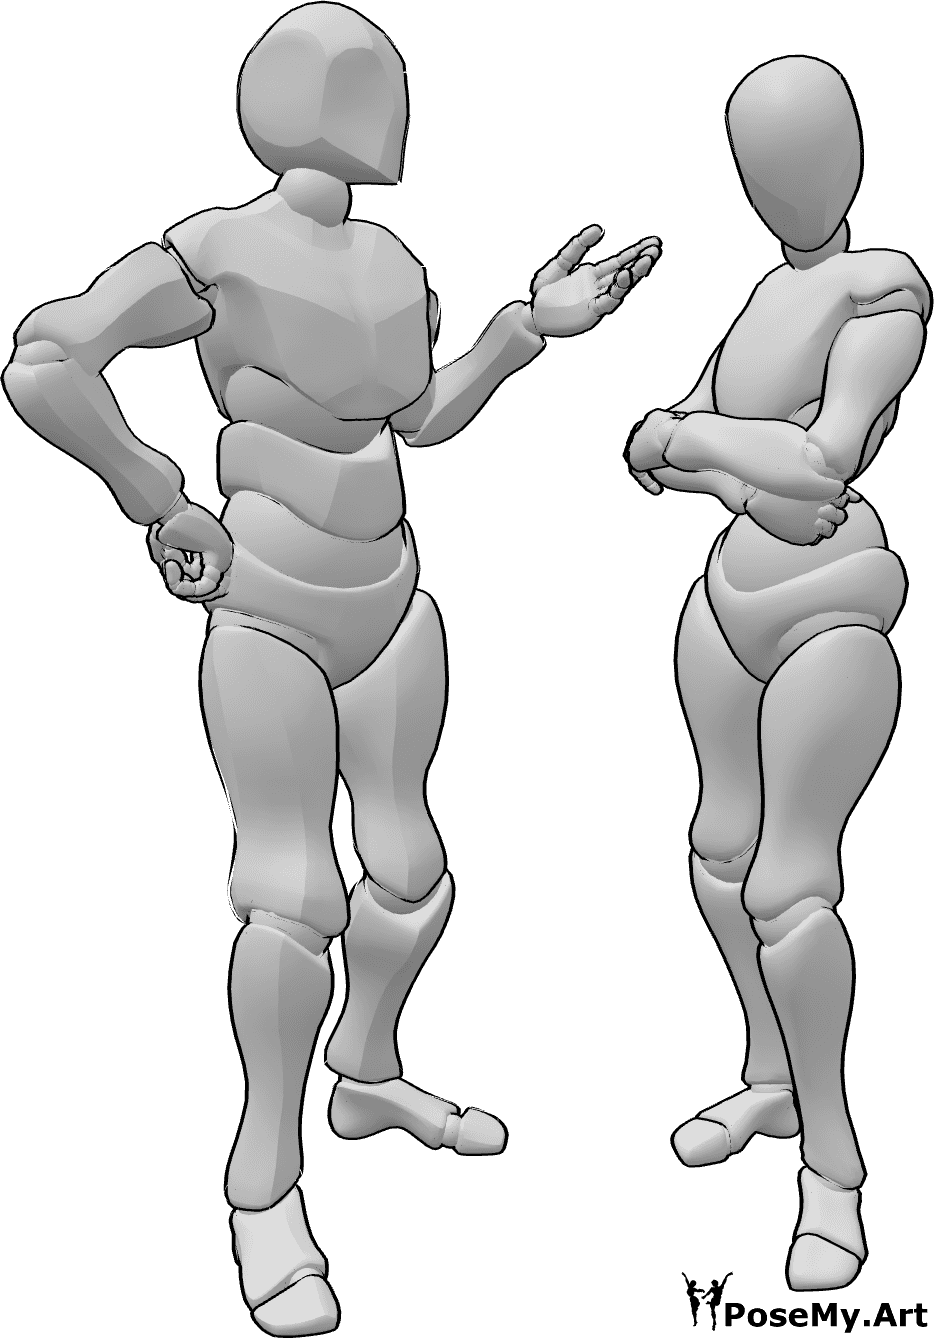 Référence des poses- Femme homme debout - Une femme et un homme se tiennent debout et prennent la pose pour se battre